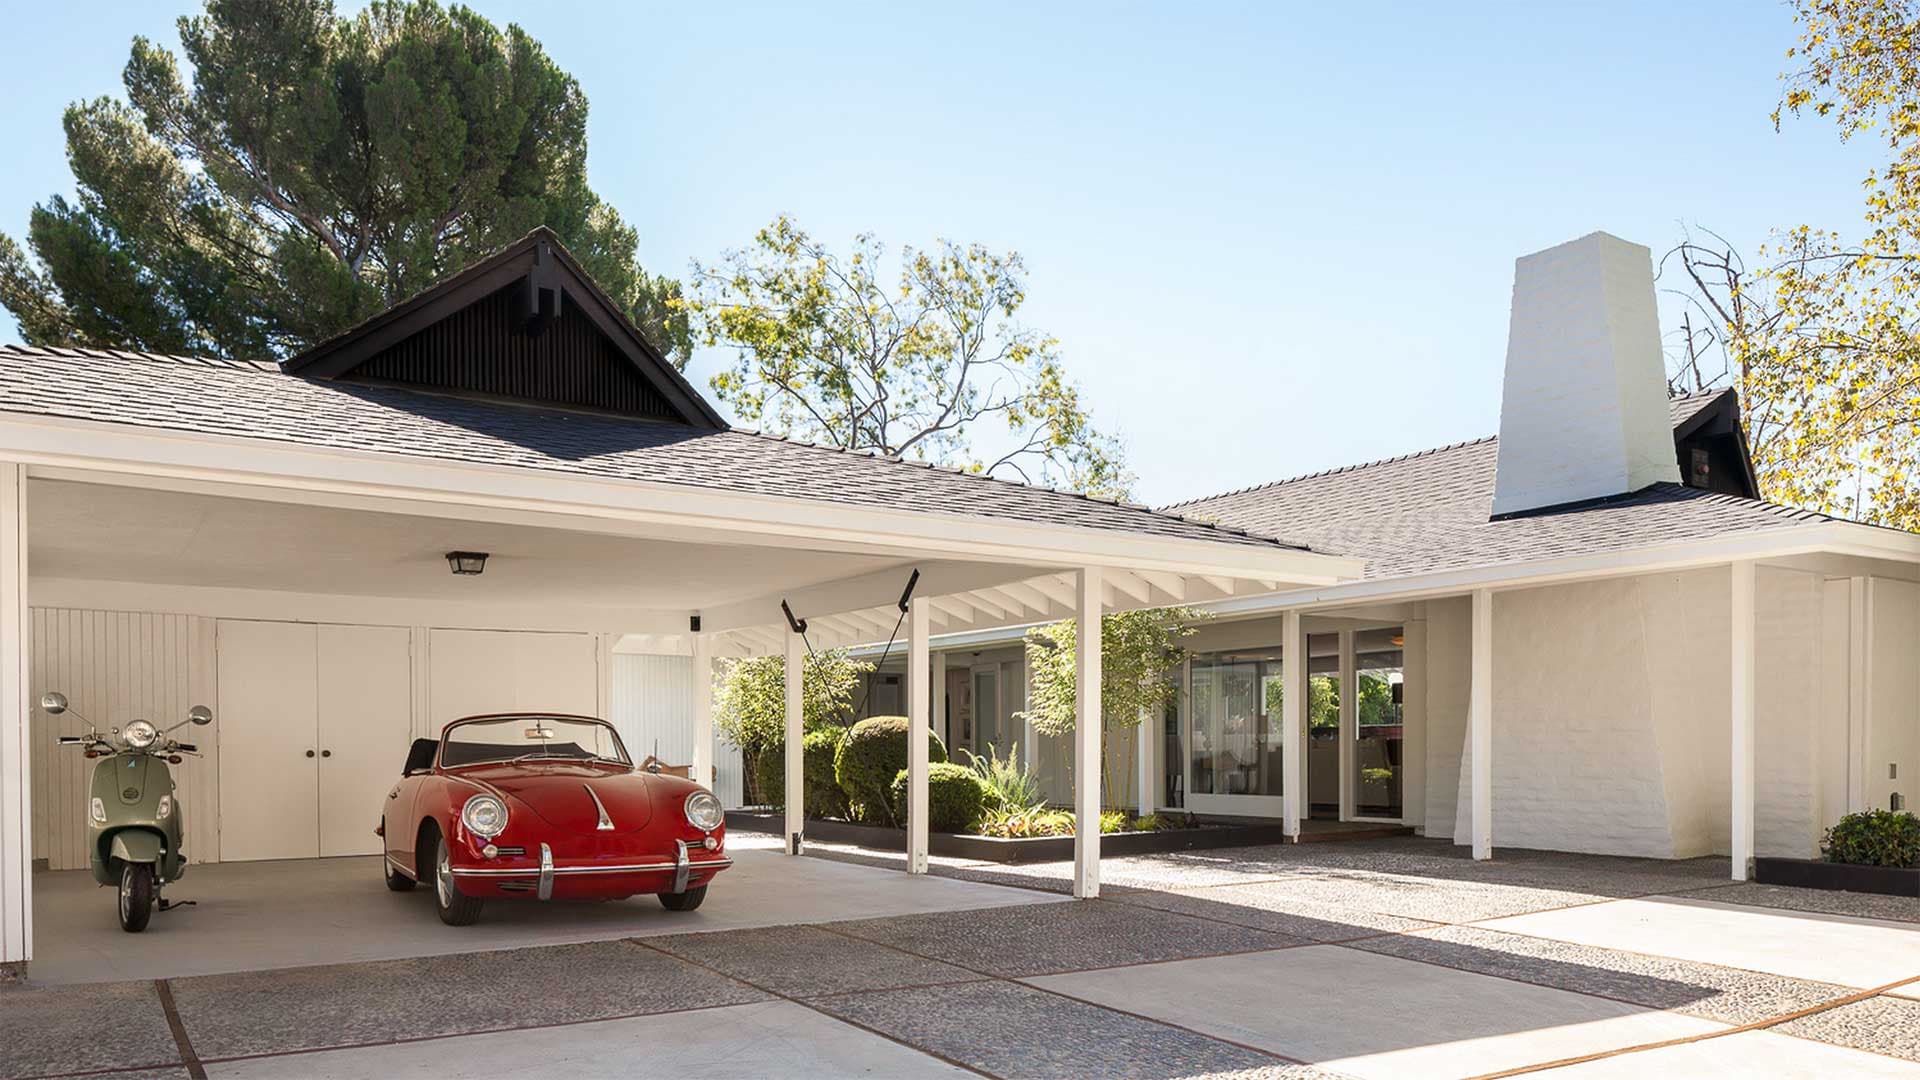 Jonah Hill Owns This House, but Not Its Porsche 356